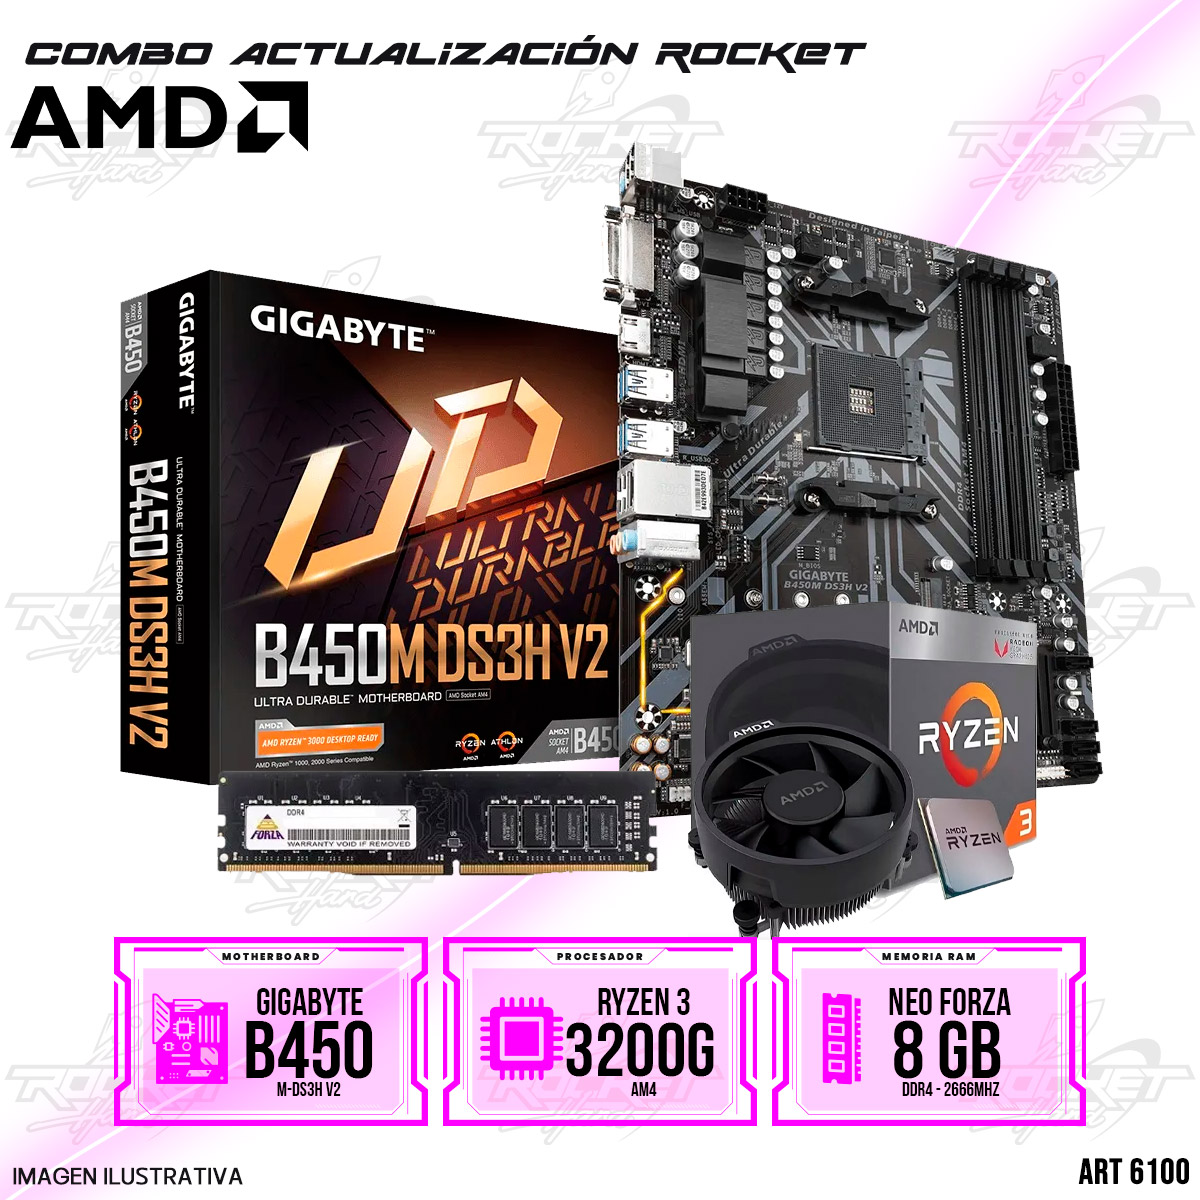 COMBO ROCKET AMD RYZEN 3 3200G - B450- 8GB RAM